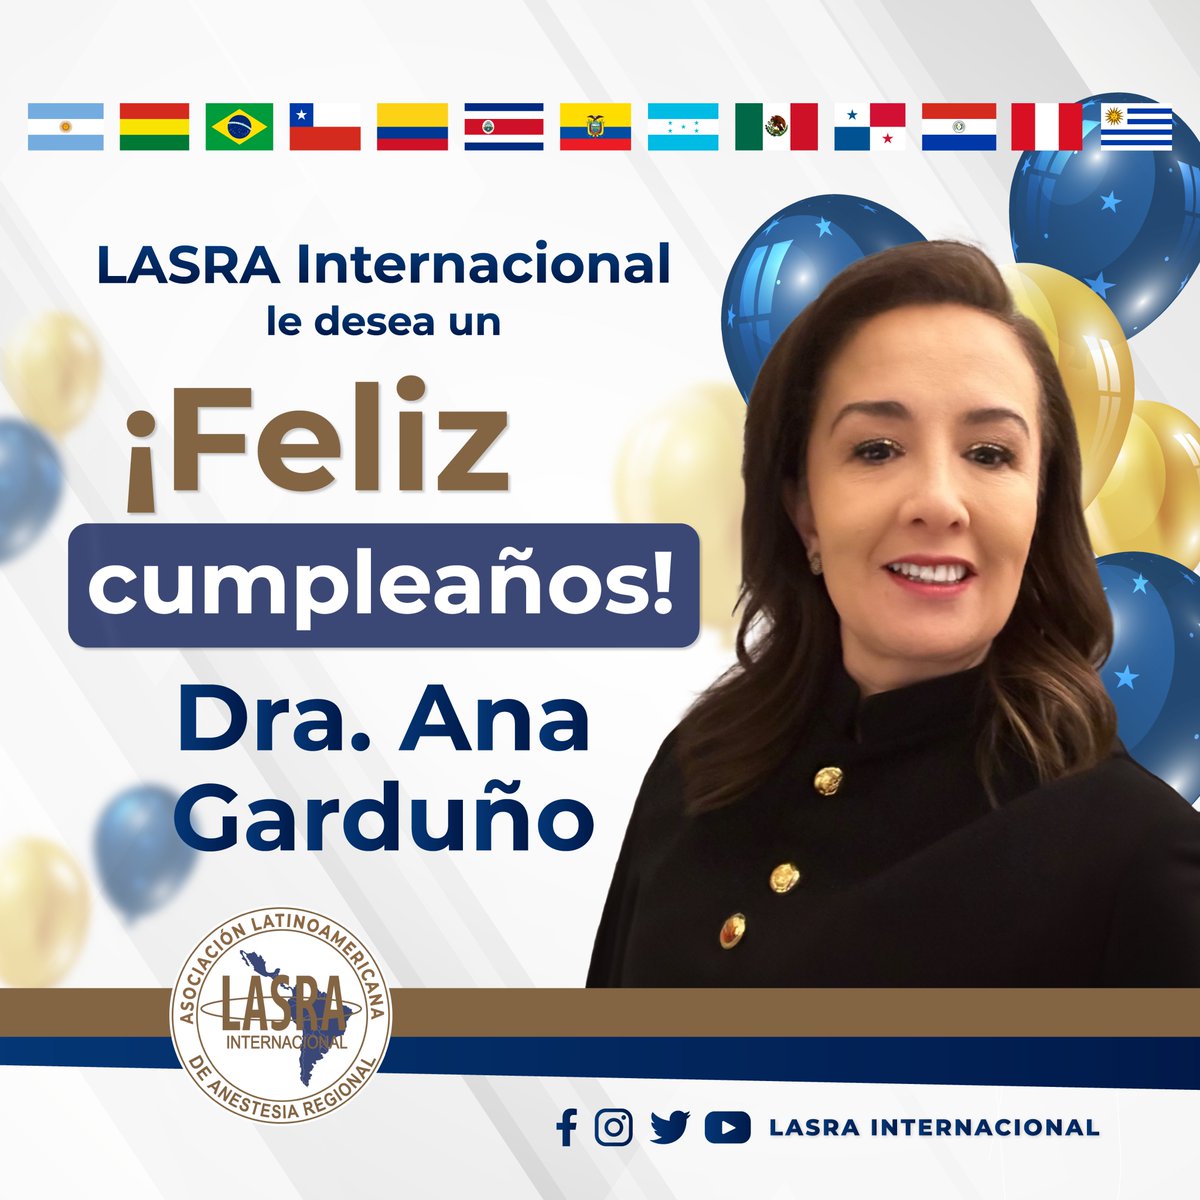 ¡Feliz cumpleaños Dra. Ana Garduño! Le deseamos que tenga un día muy especial lleno de alegría, amor y compañía y que los momentos que viva en su cumpleaños sean inolvidables y que llenen su corazón de luz y felicidad.